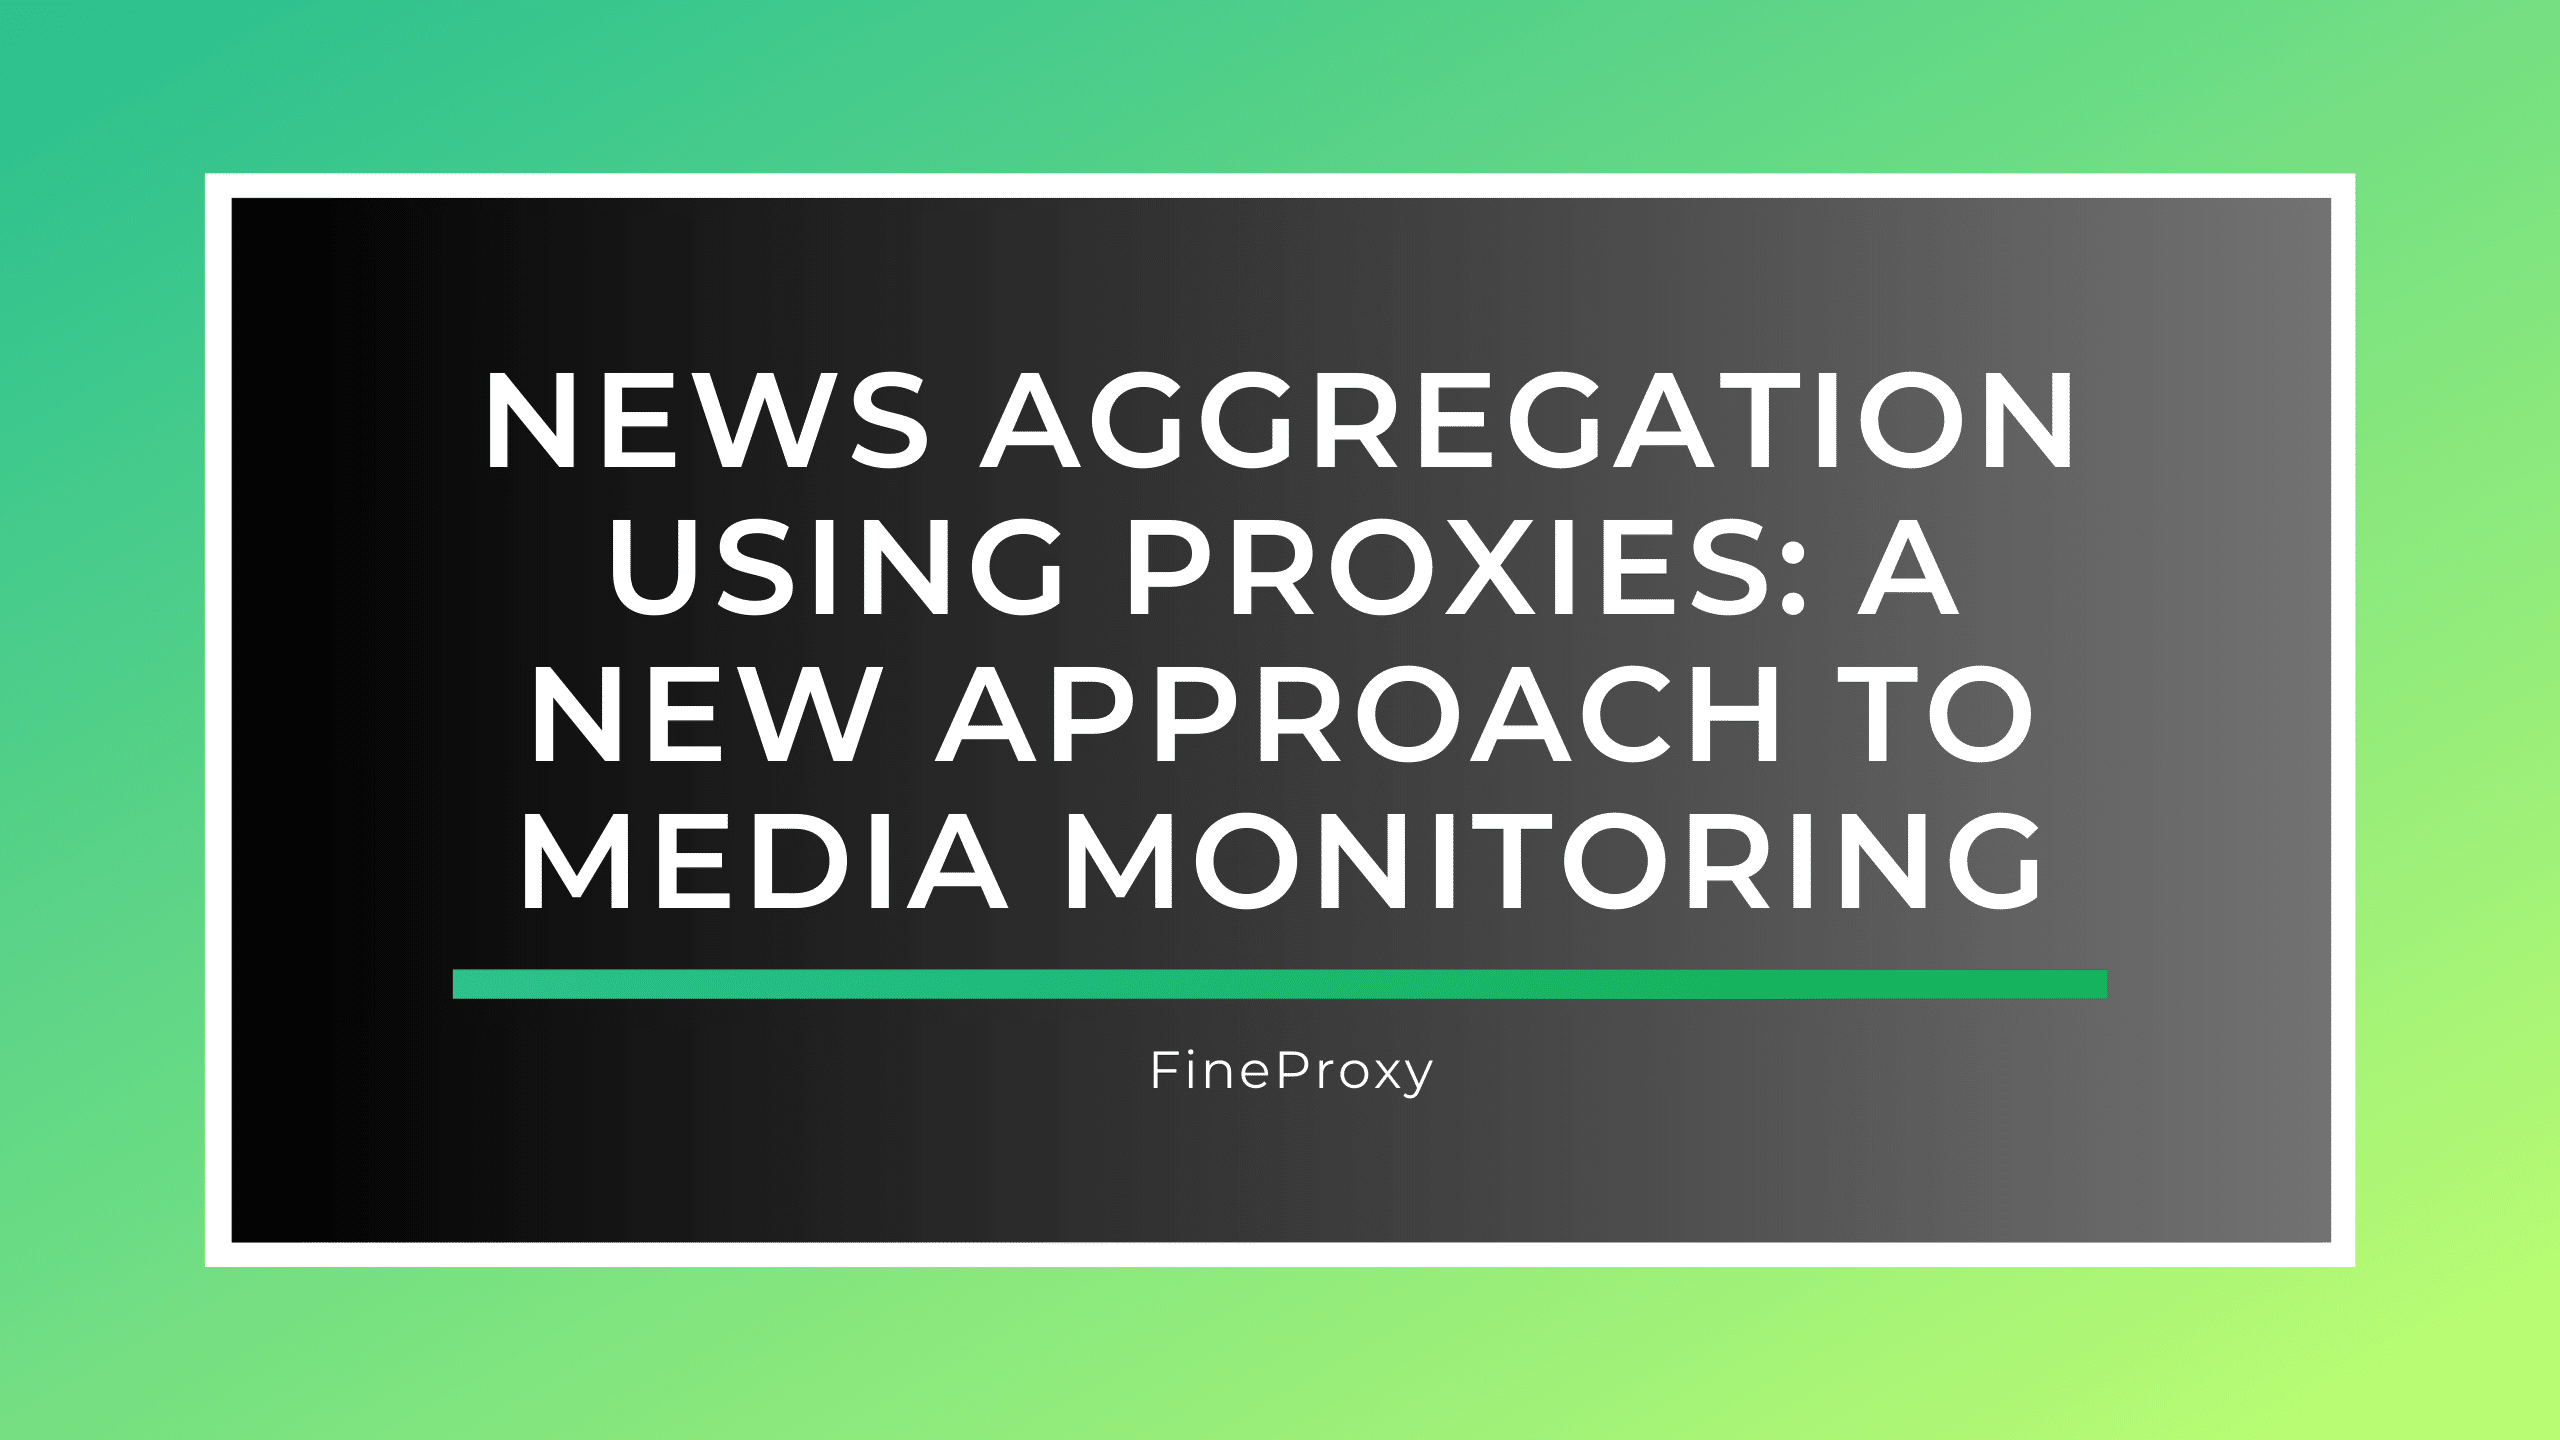 프록시를 사용한 뉴스 집계: 미디어 모니터링에 대한 새로운 접근 방식